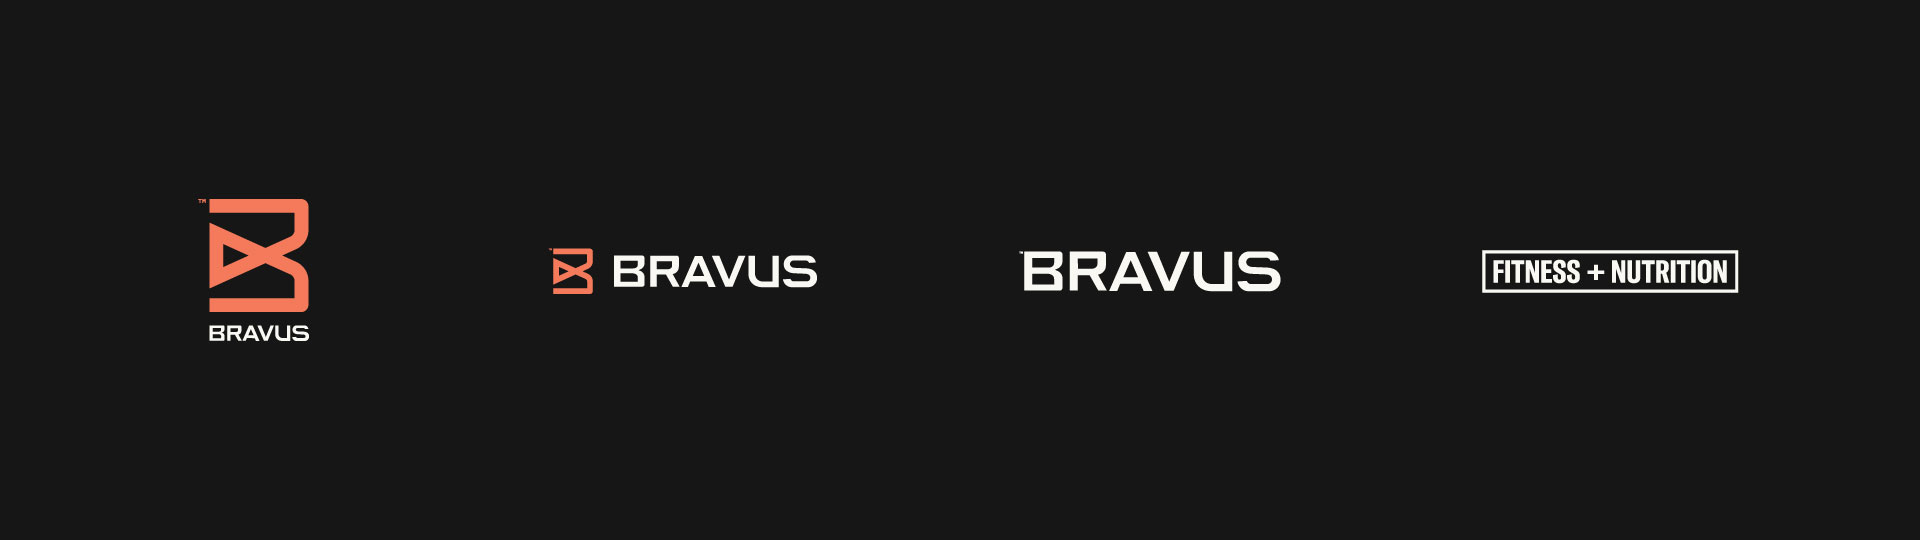 BRAVUS_Logo_Set_02a-1